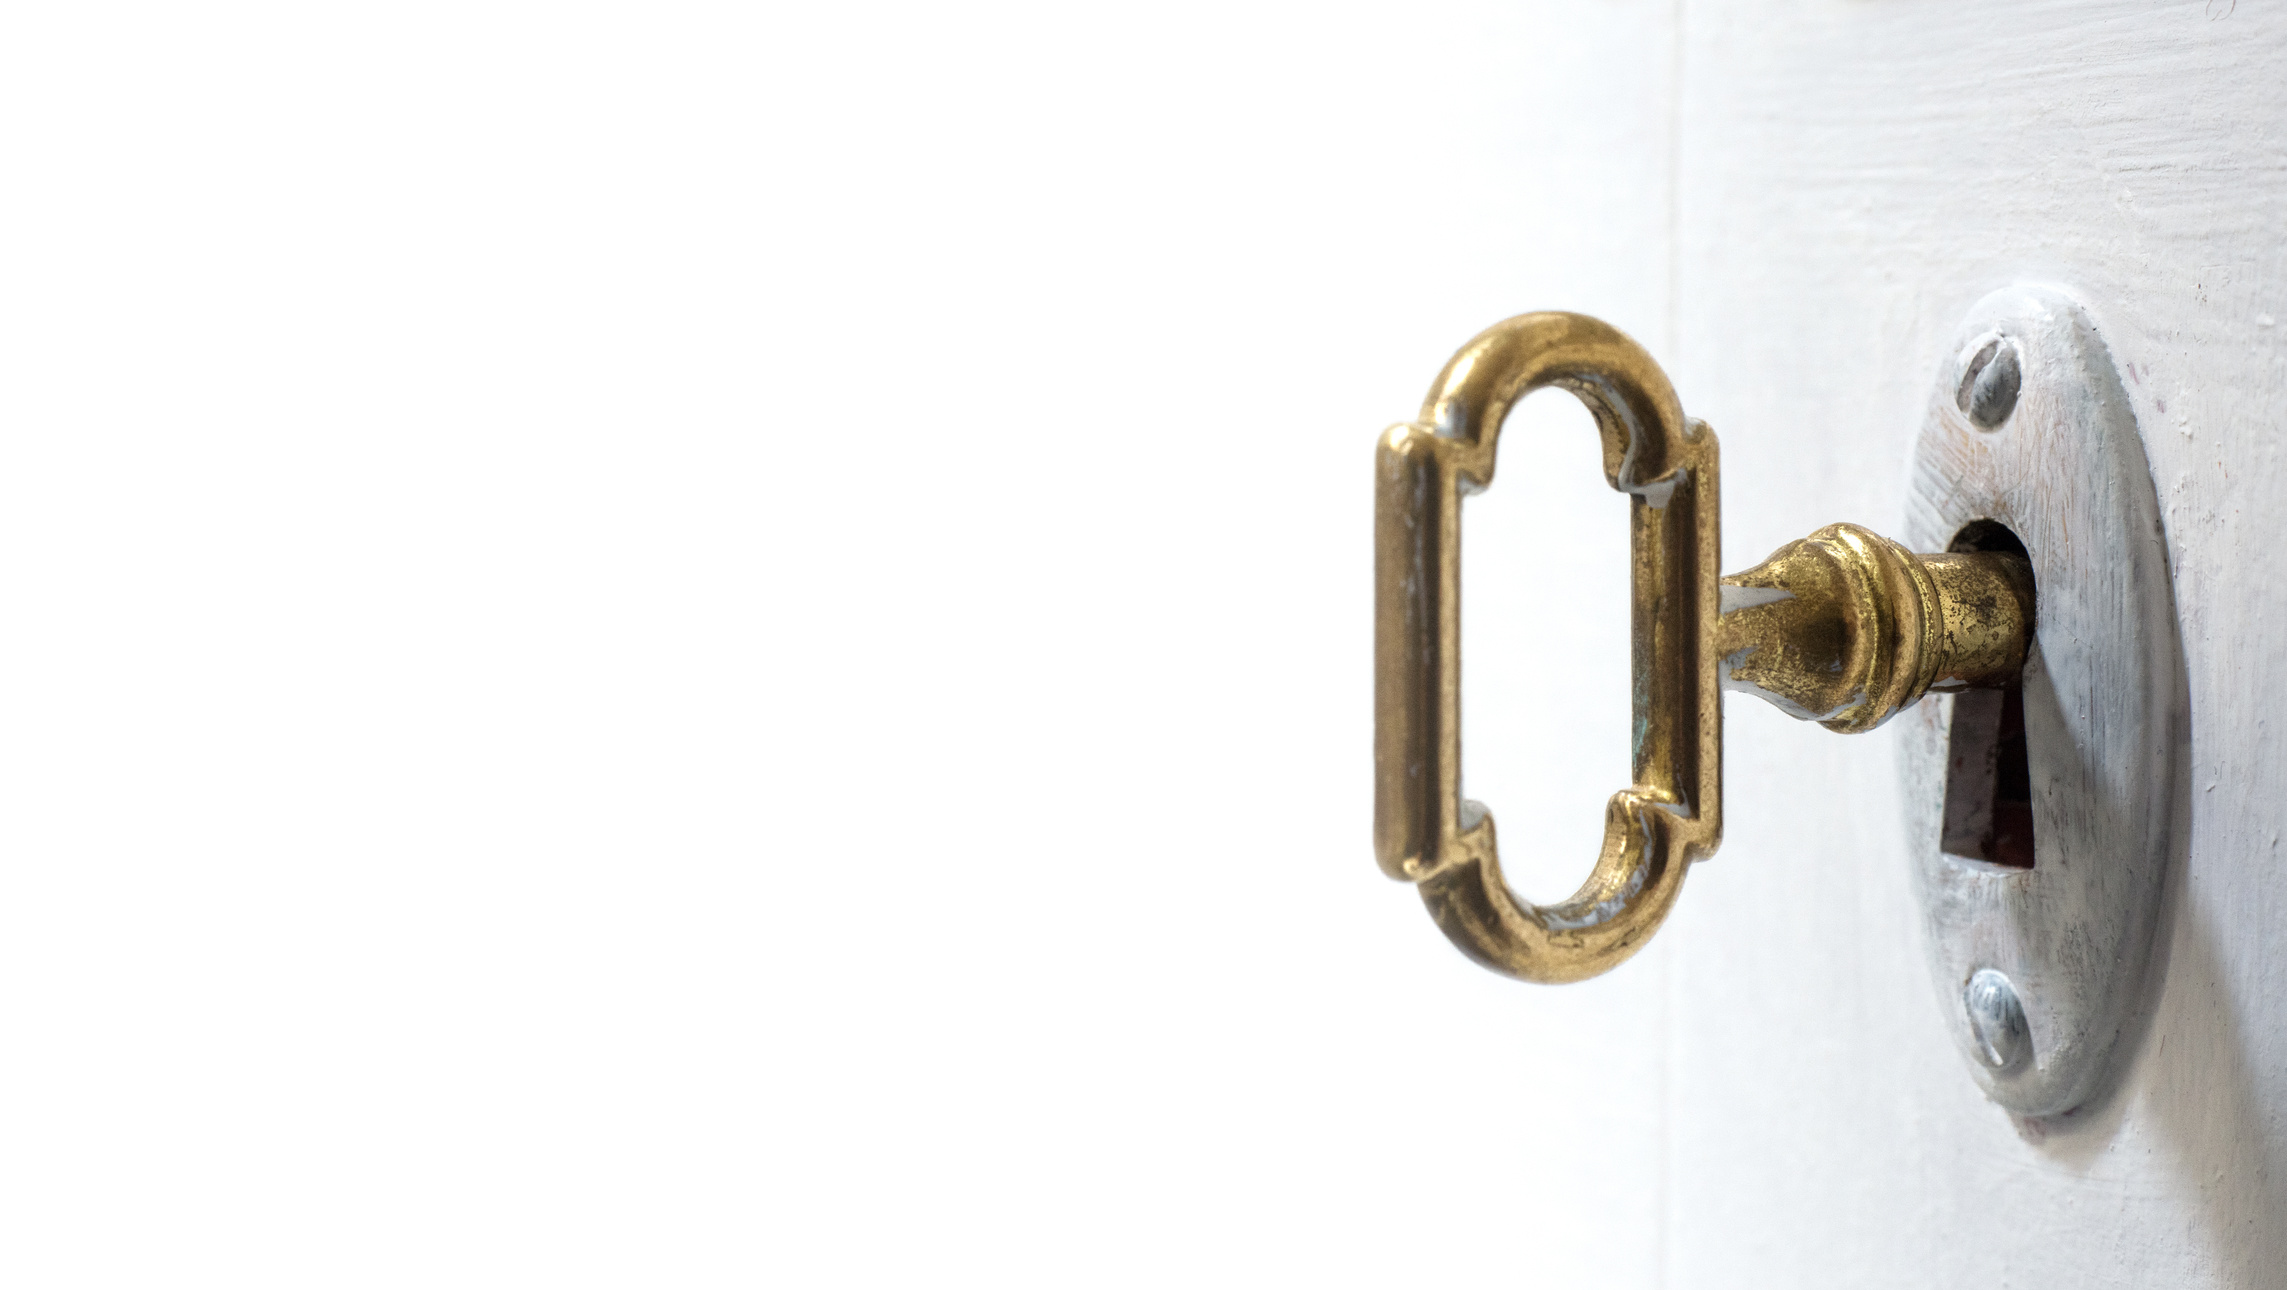 Old key in keyhole, macro shot, white background.